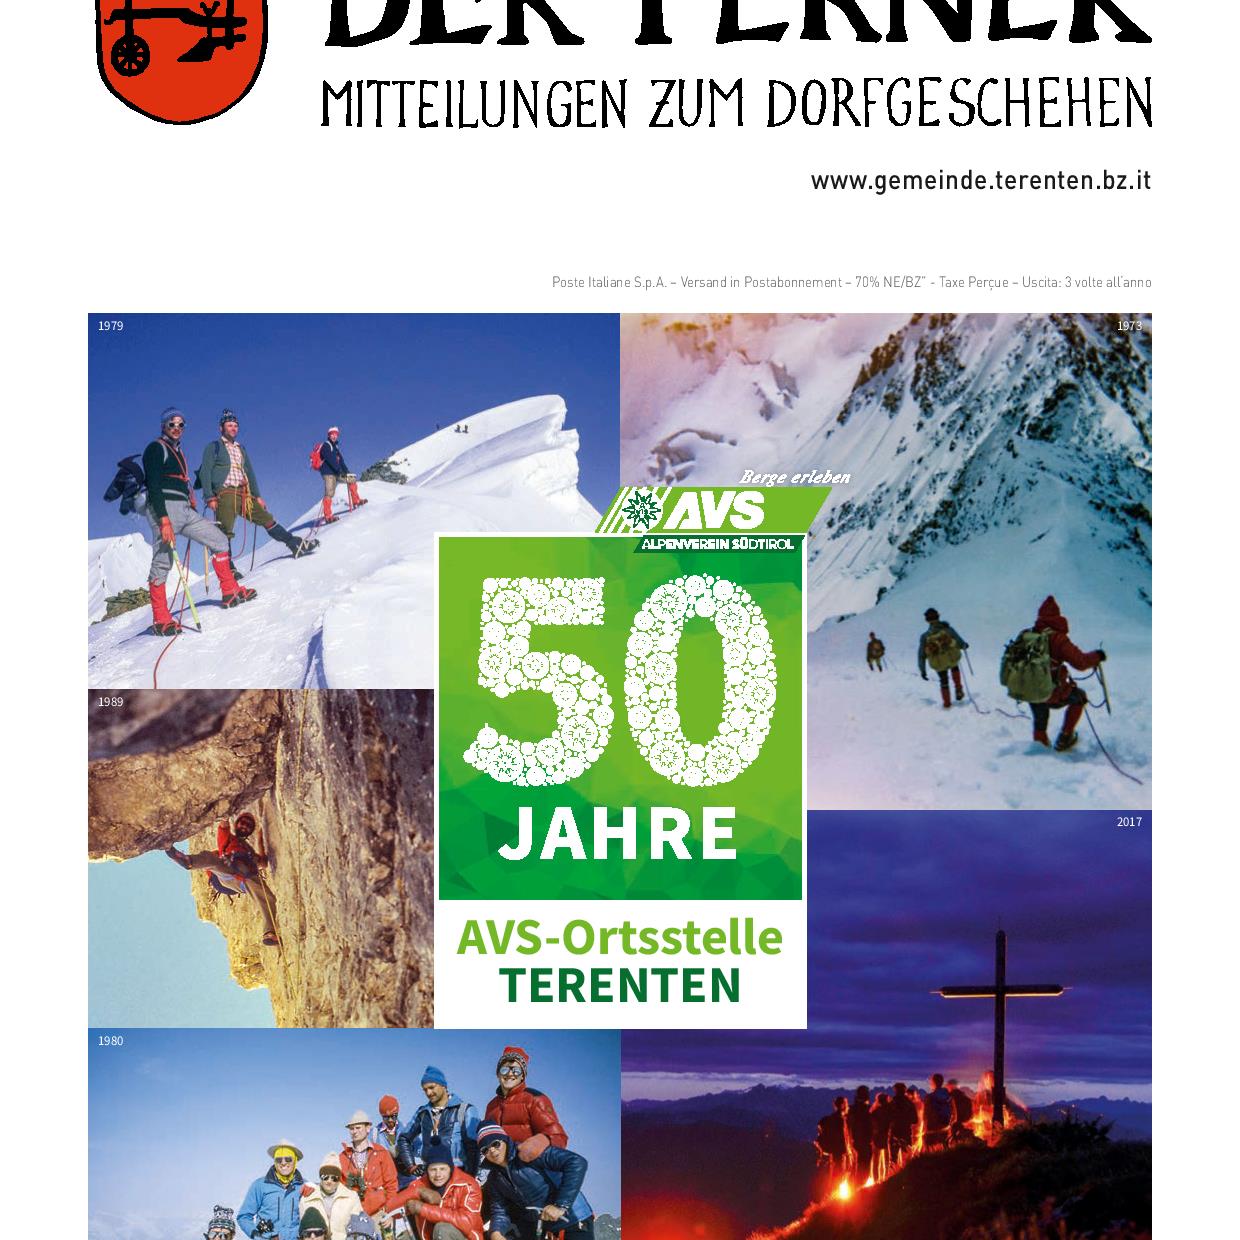 Titelblatt Der Terner Nr. 1/2022